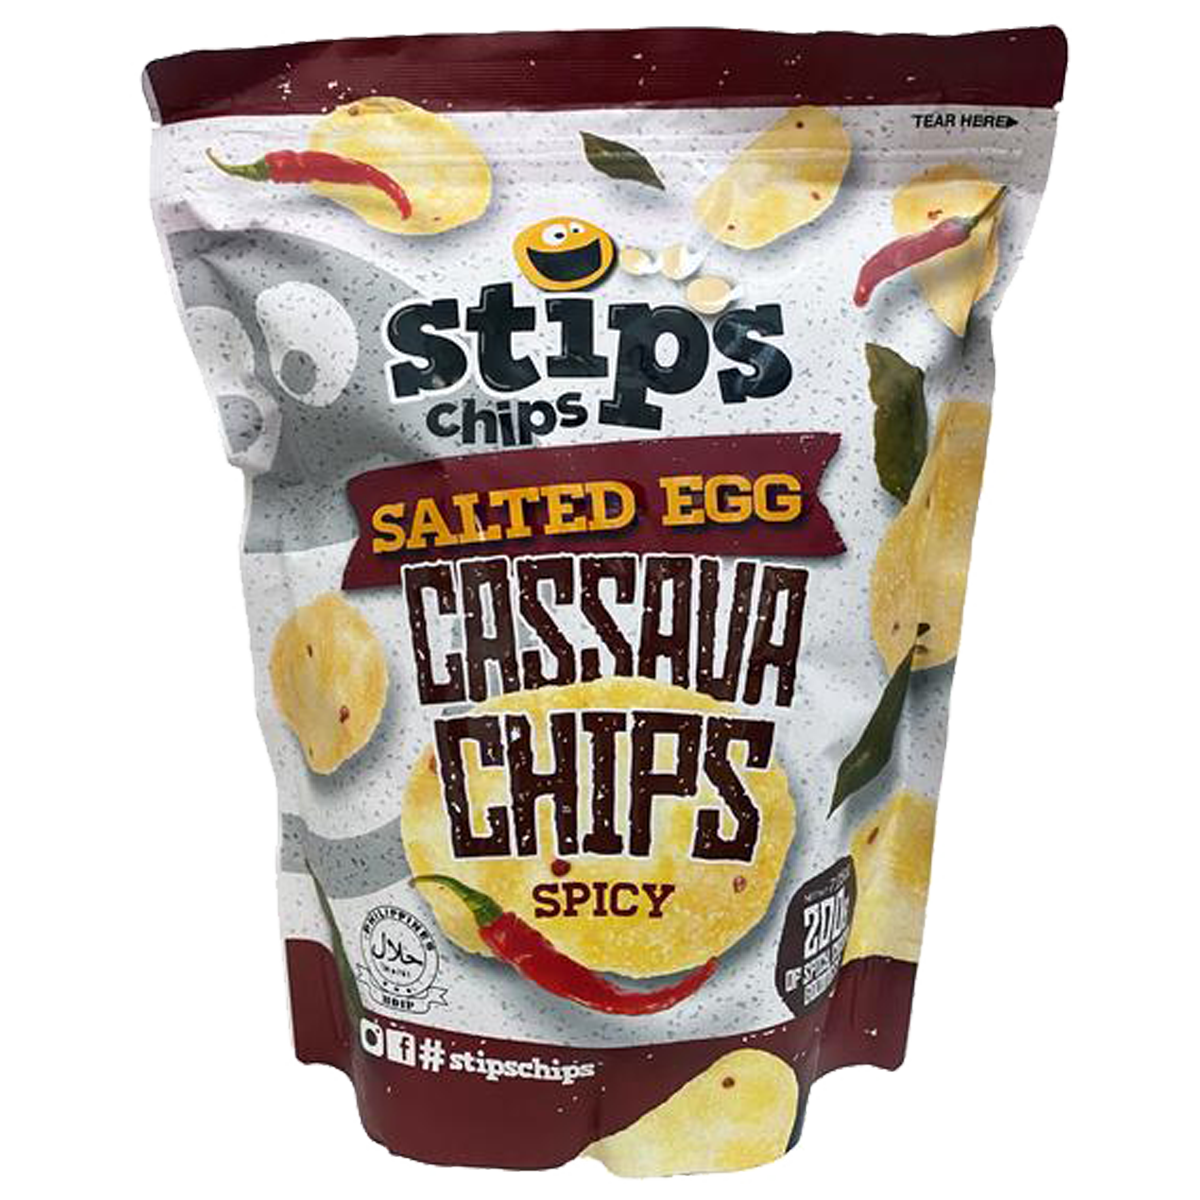 Stip’s Chips Salted Egg Cassava Chips Spicy 200g